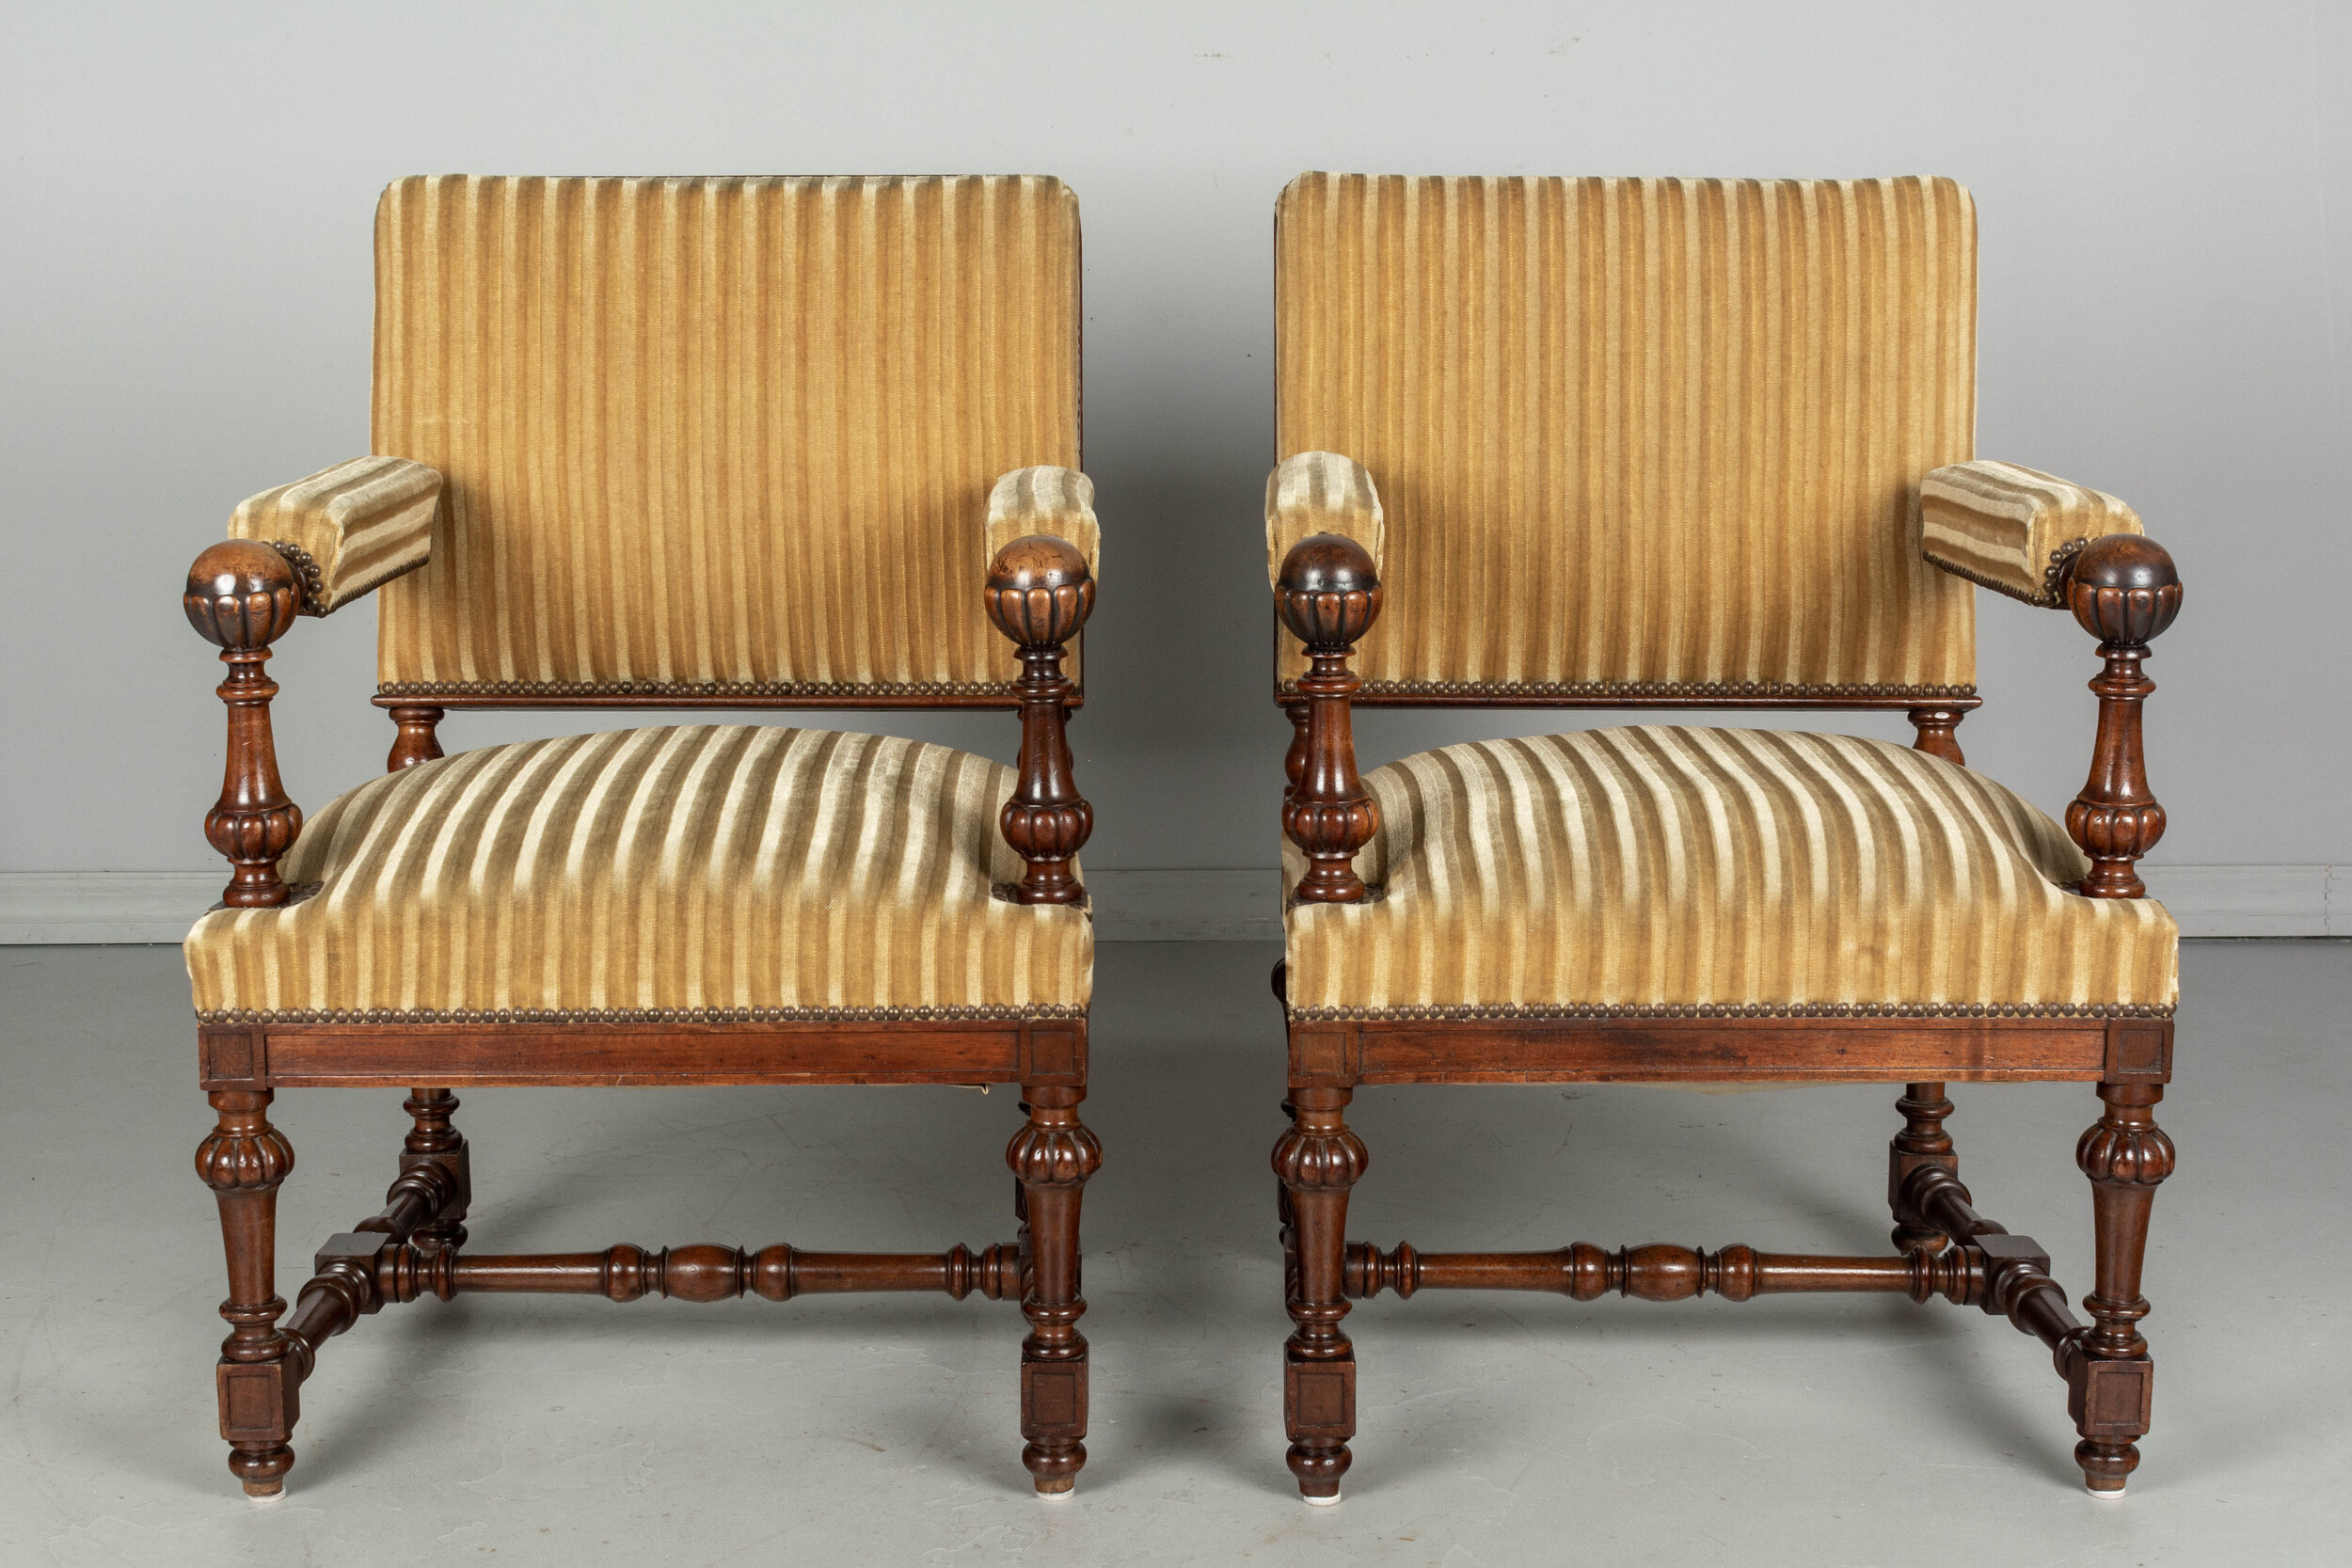 Pair of French, Louis XIV style fauteuils a la Reine